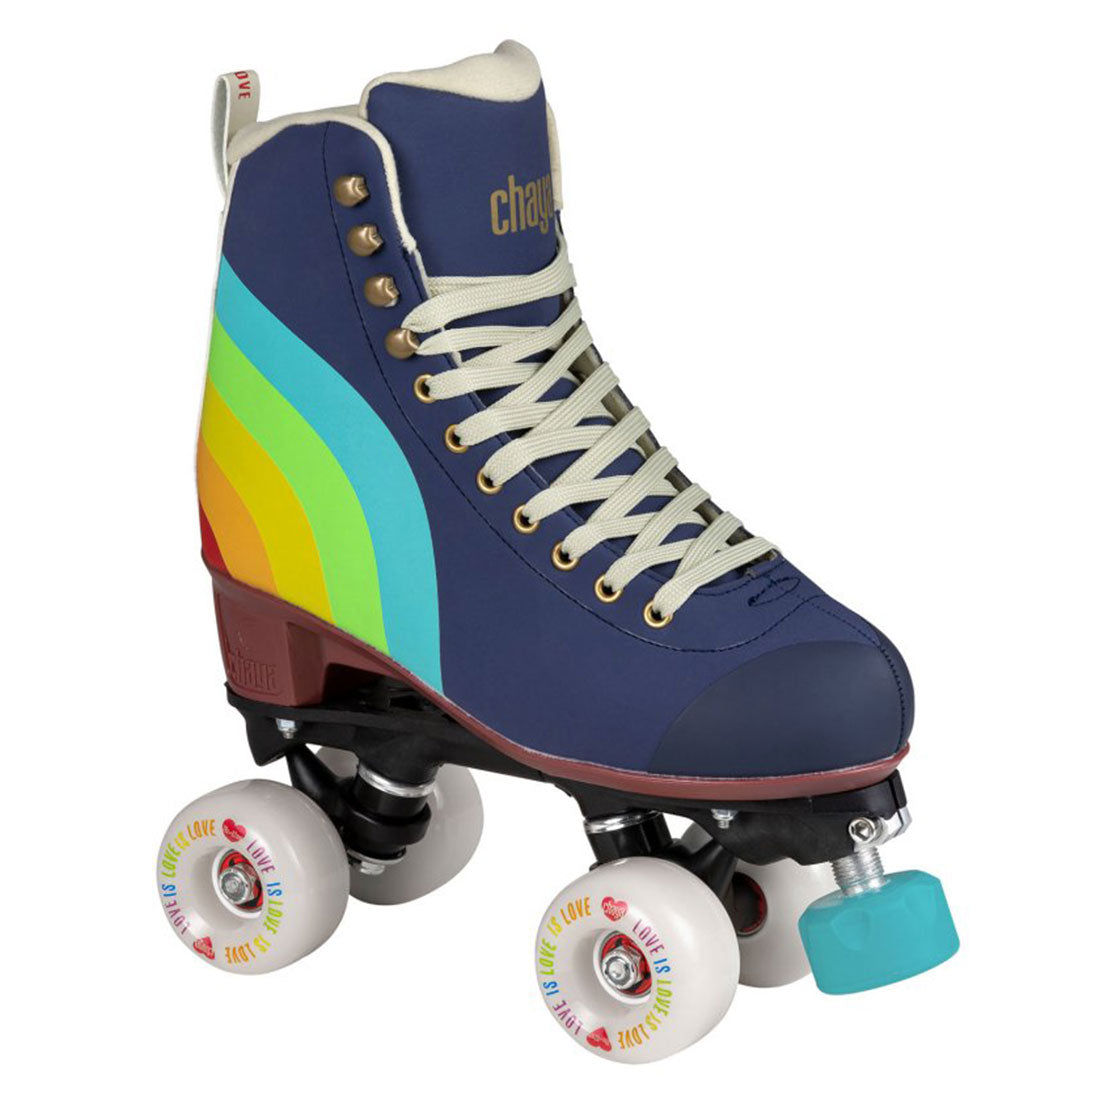 Chaya Melrose Elite Skate - Love Is Love Roller Skates